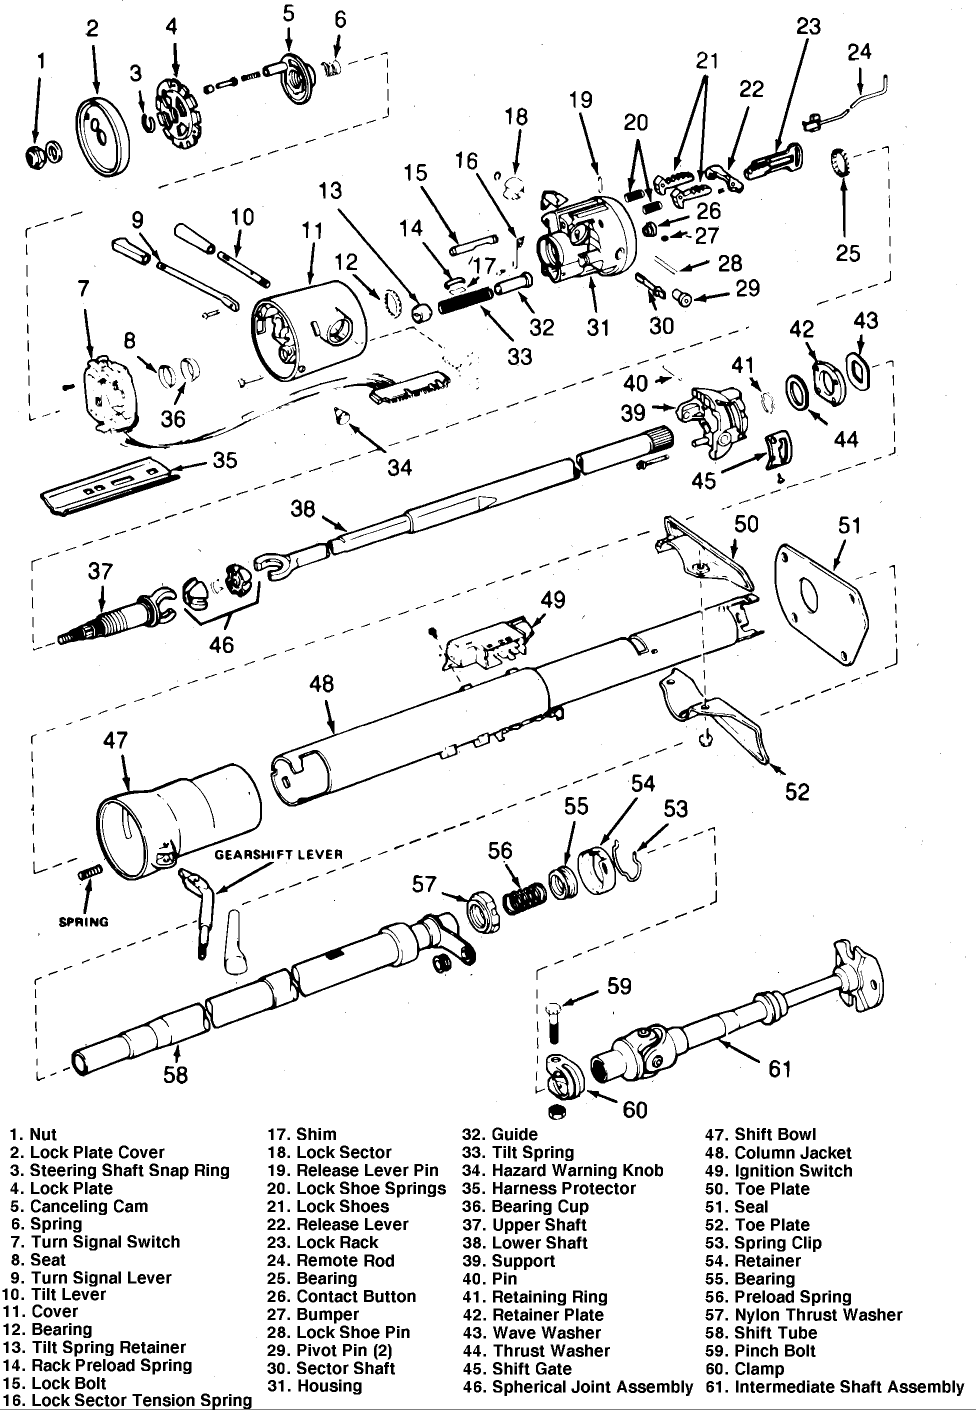 cj7 steering column diagram